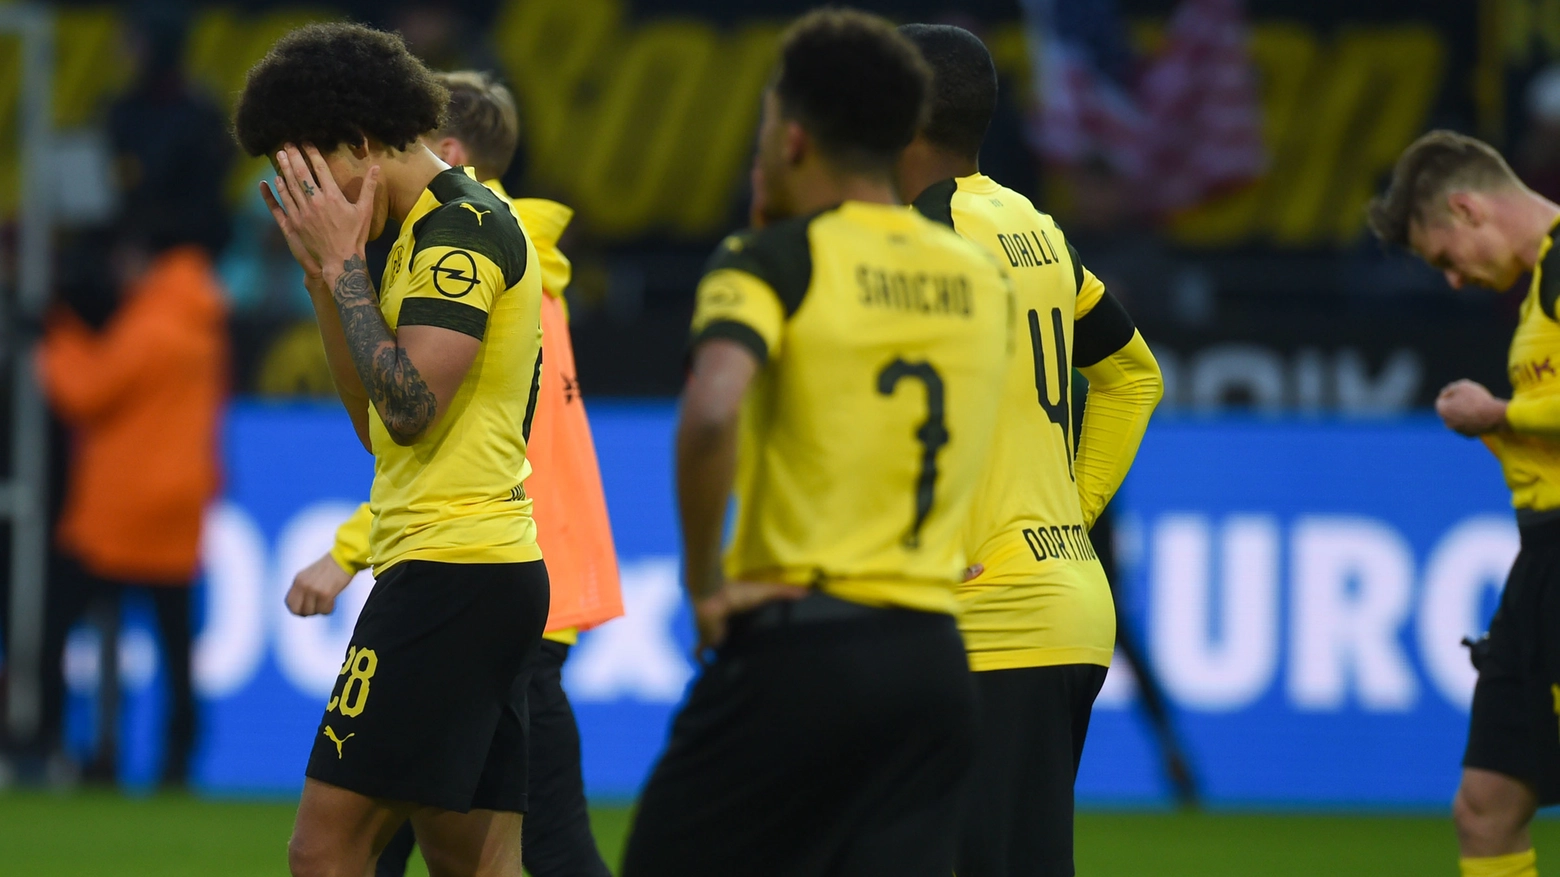 Delusione Borussia Dortmund